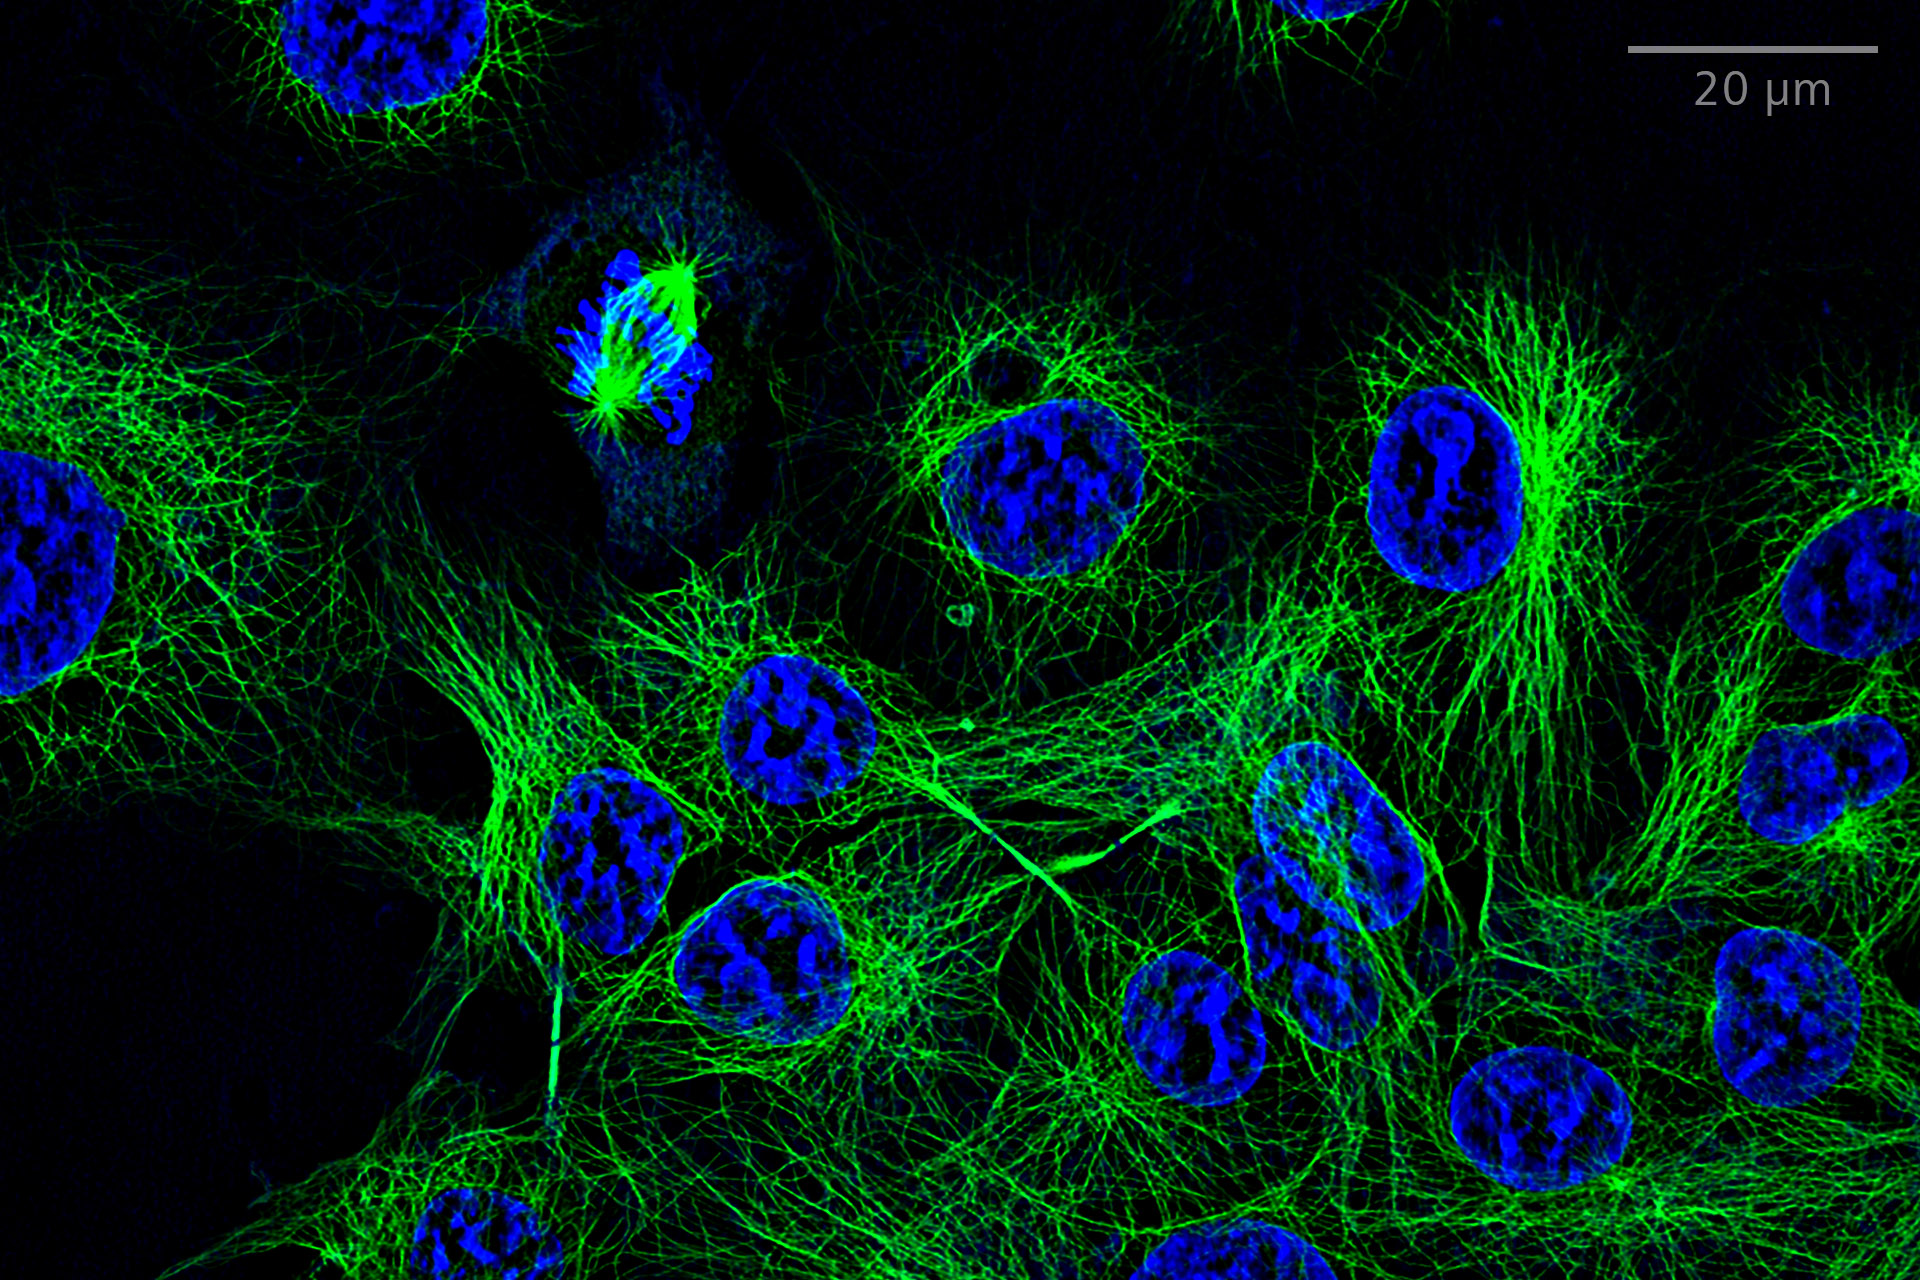 SIM² Apotome: comparación de imágenes de un solo plano de widefield y SIM² Apotome de células COS-7 teñidas para microtúbulos (anti-α-tubulina Alexa fluor 488, verde) y núcleos (Hoechst, azul). Objetivo: LD LCI Plan-Apochromat 25× / 0,8 Imm Corr